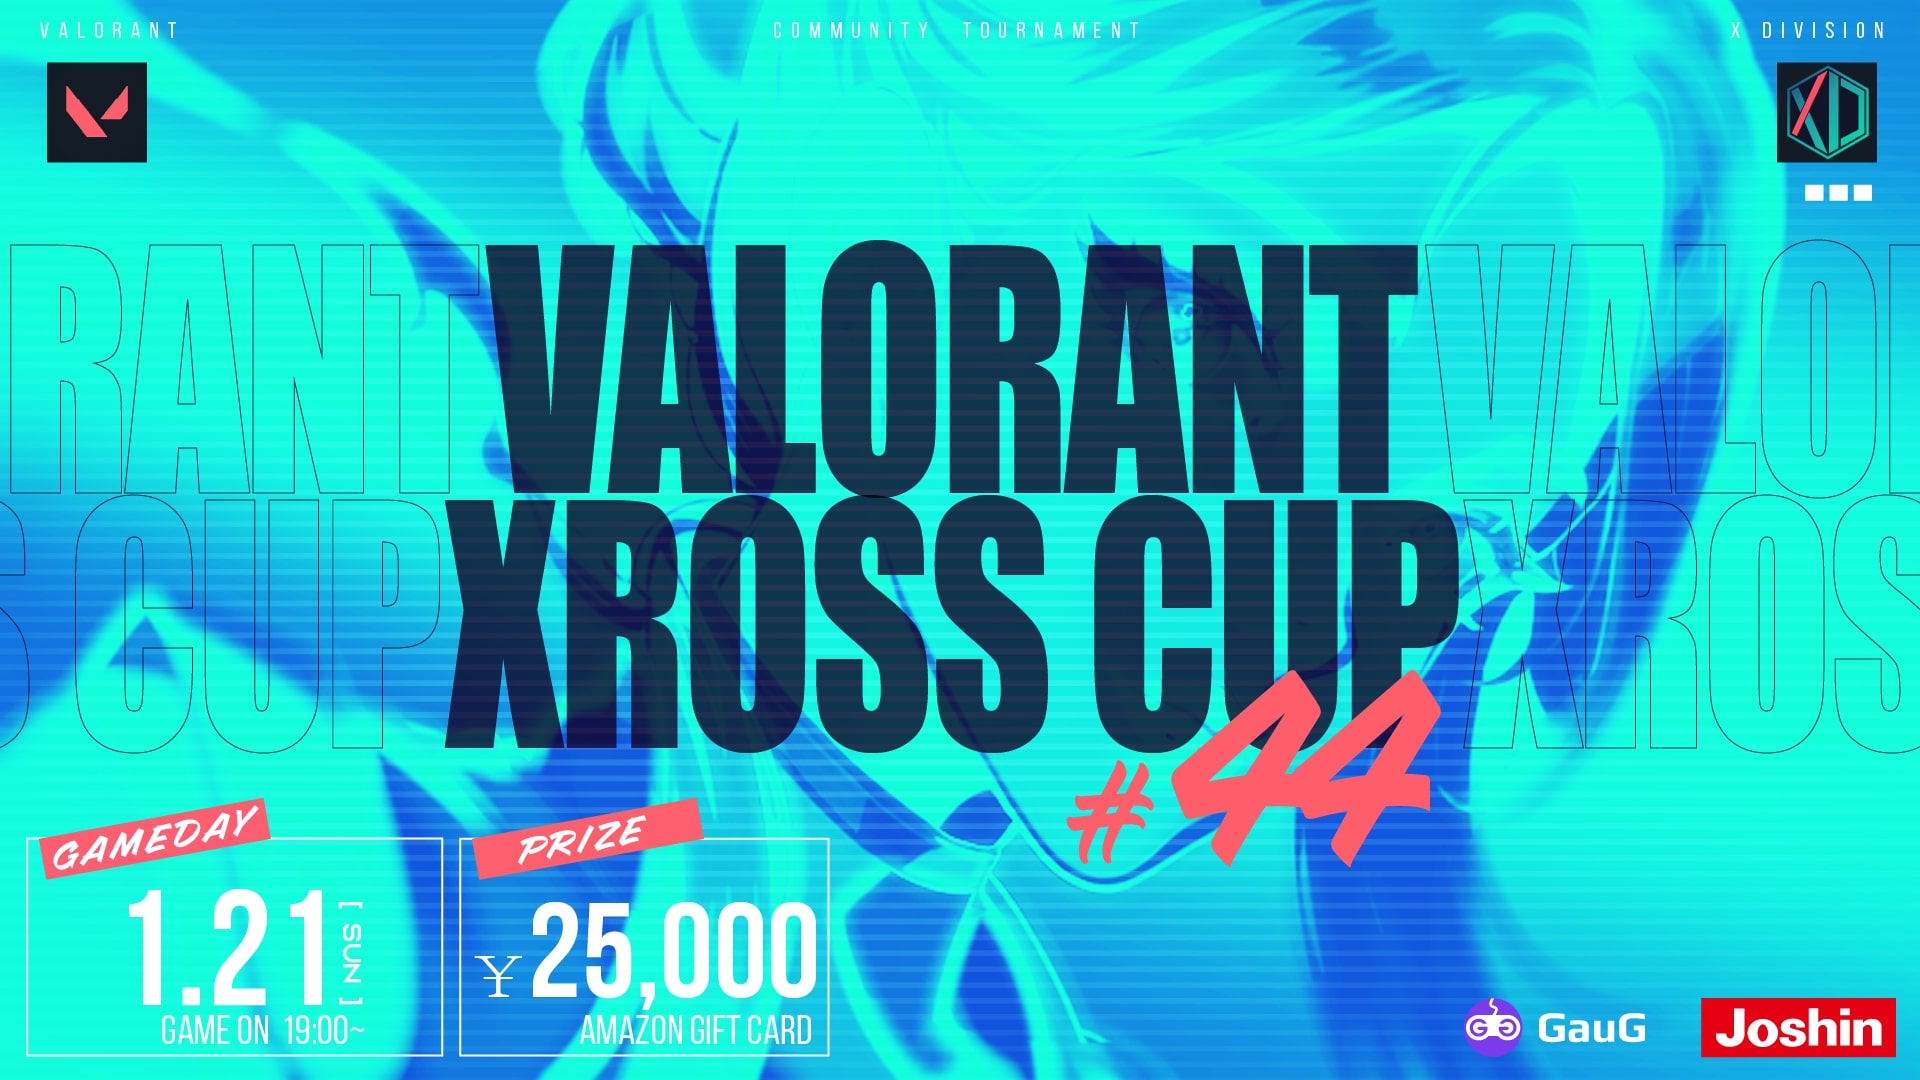 コミュニティ大会「VALORANT Xross Cup 44」が1月21日に開催、参加受付中